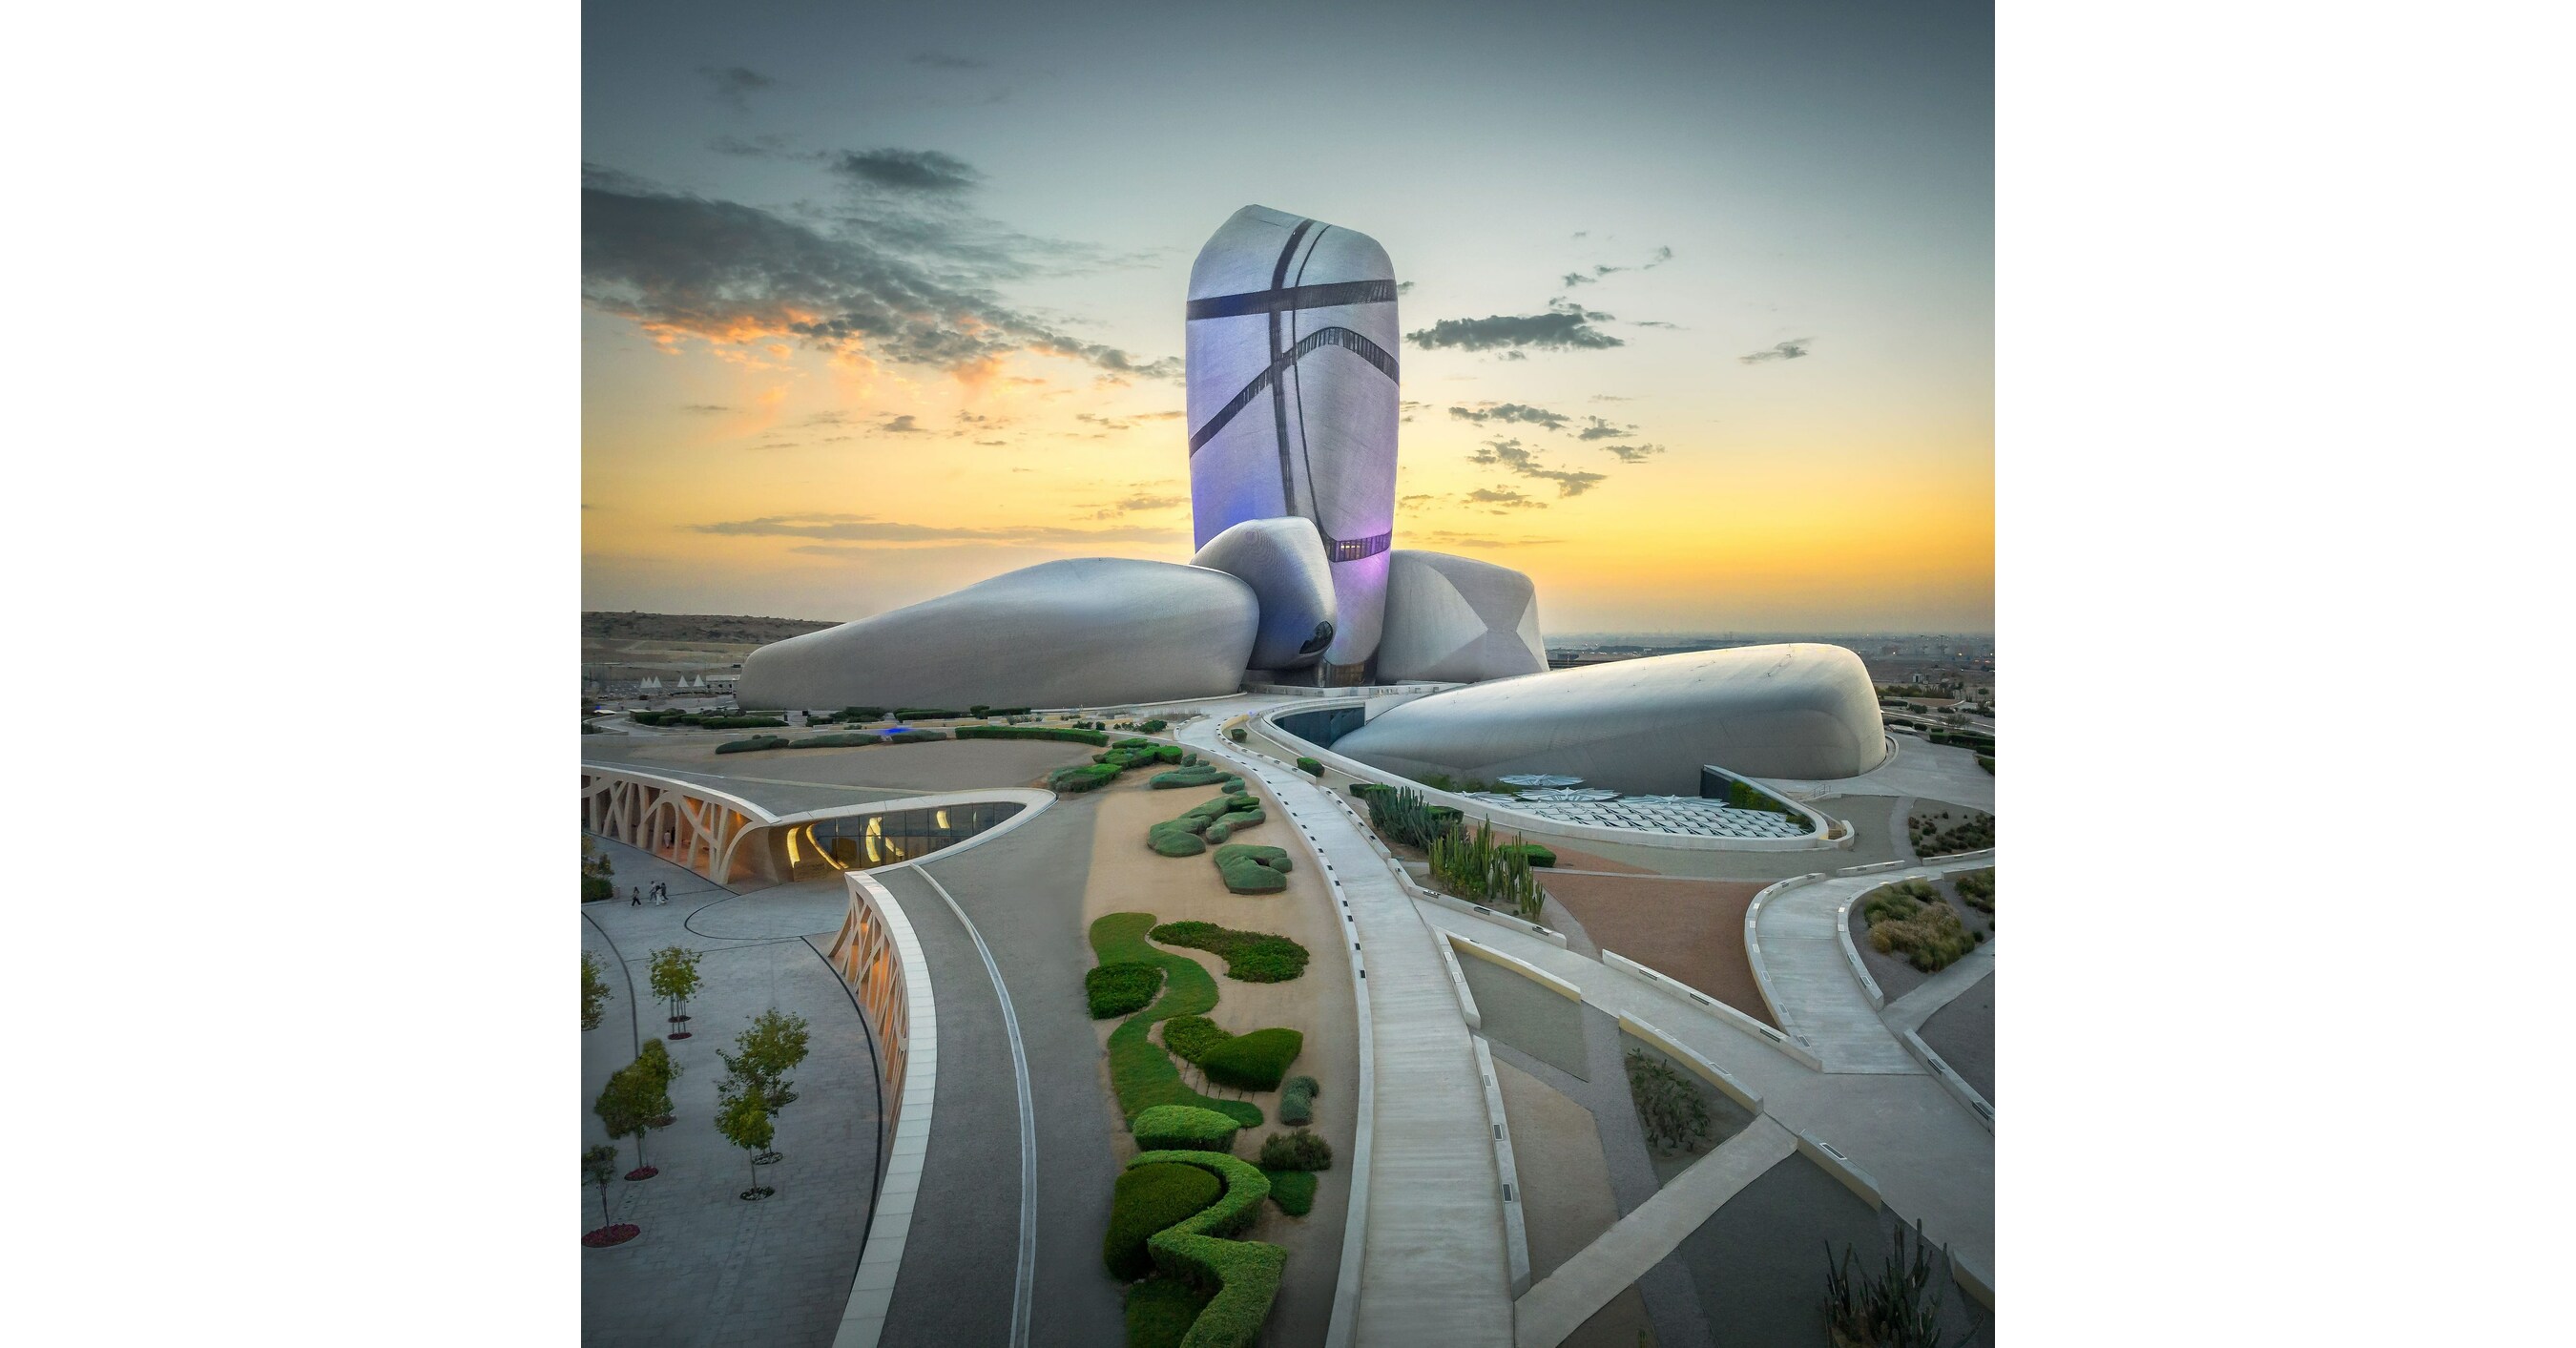 مركز الملك عبد العزيز للثقافة العالمية يفوق التوقعات بأكثر من ثلاثة ملايين زائر